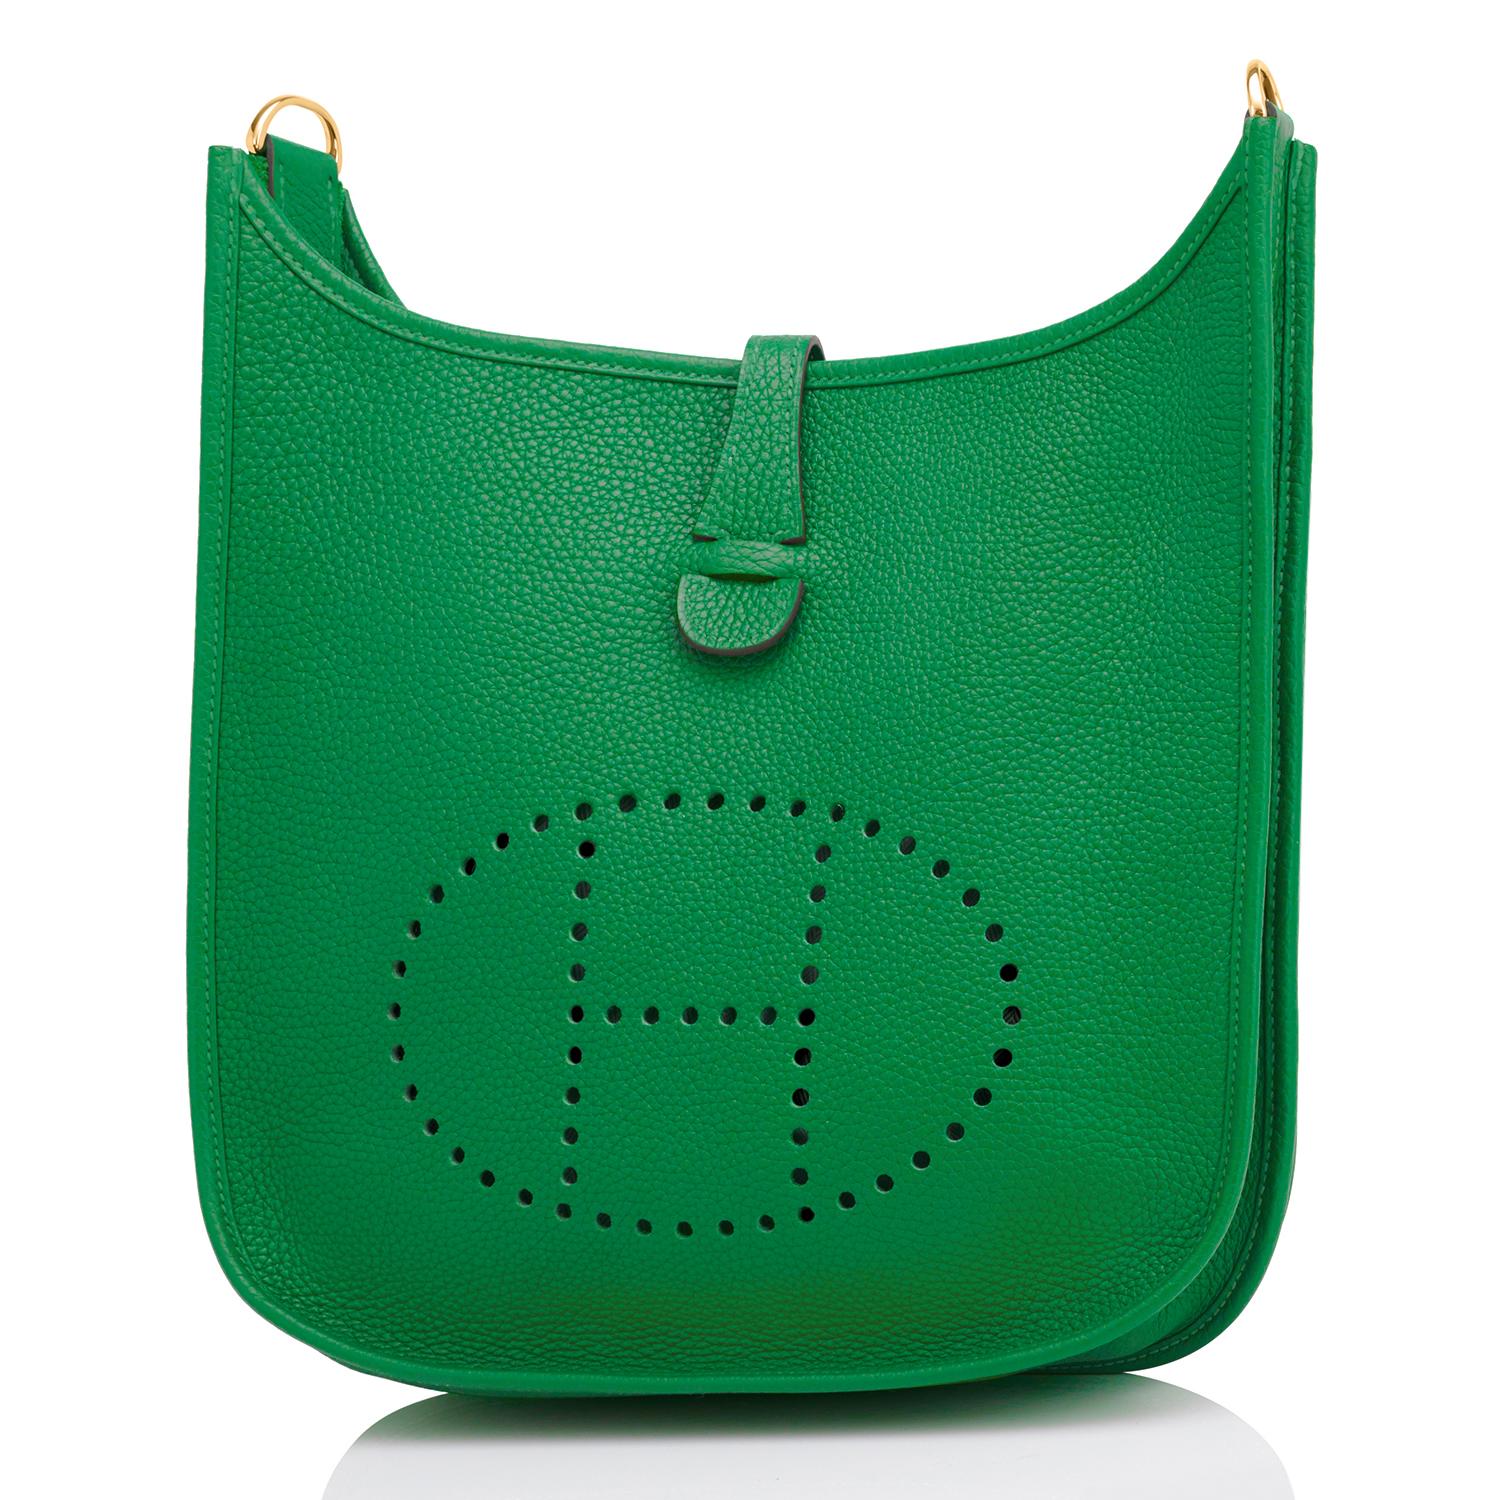 Hermes Evelyne Bag Colors - For Sale on 1stDibs  hermes evelyne colours, hermes  evelyn colors, hermes evelyne colors